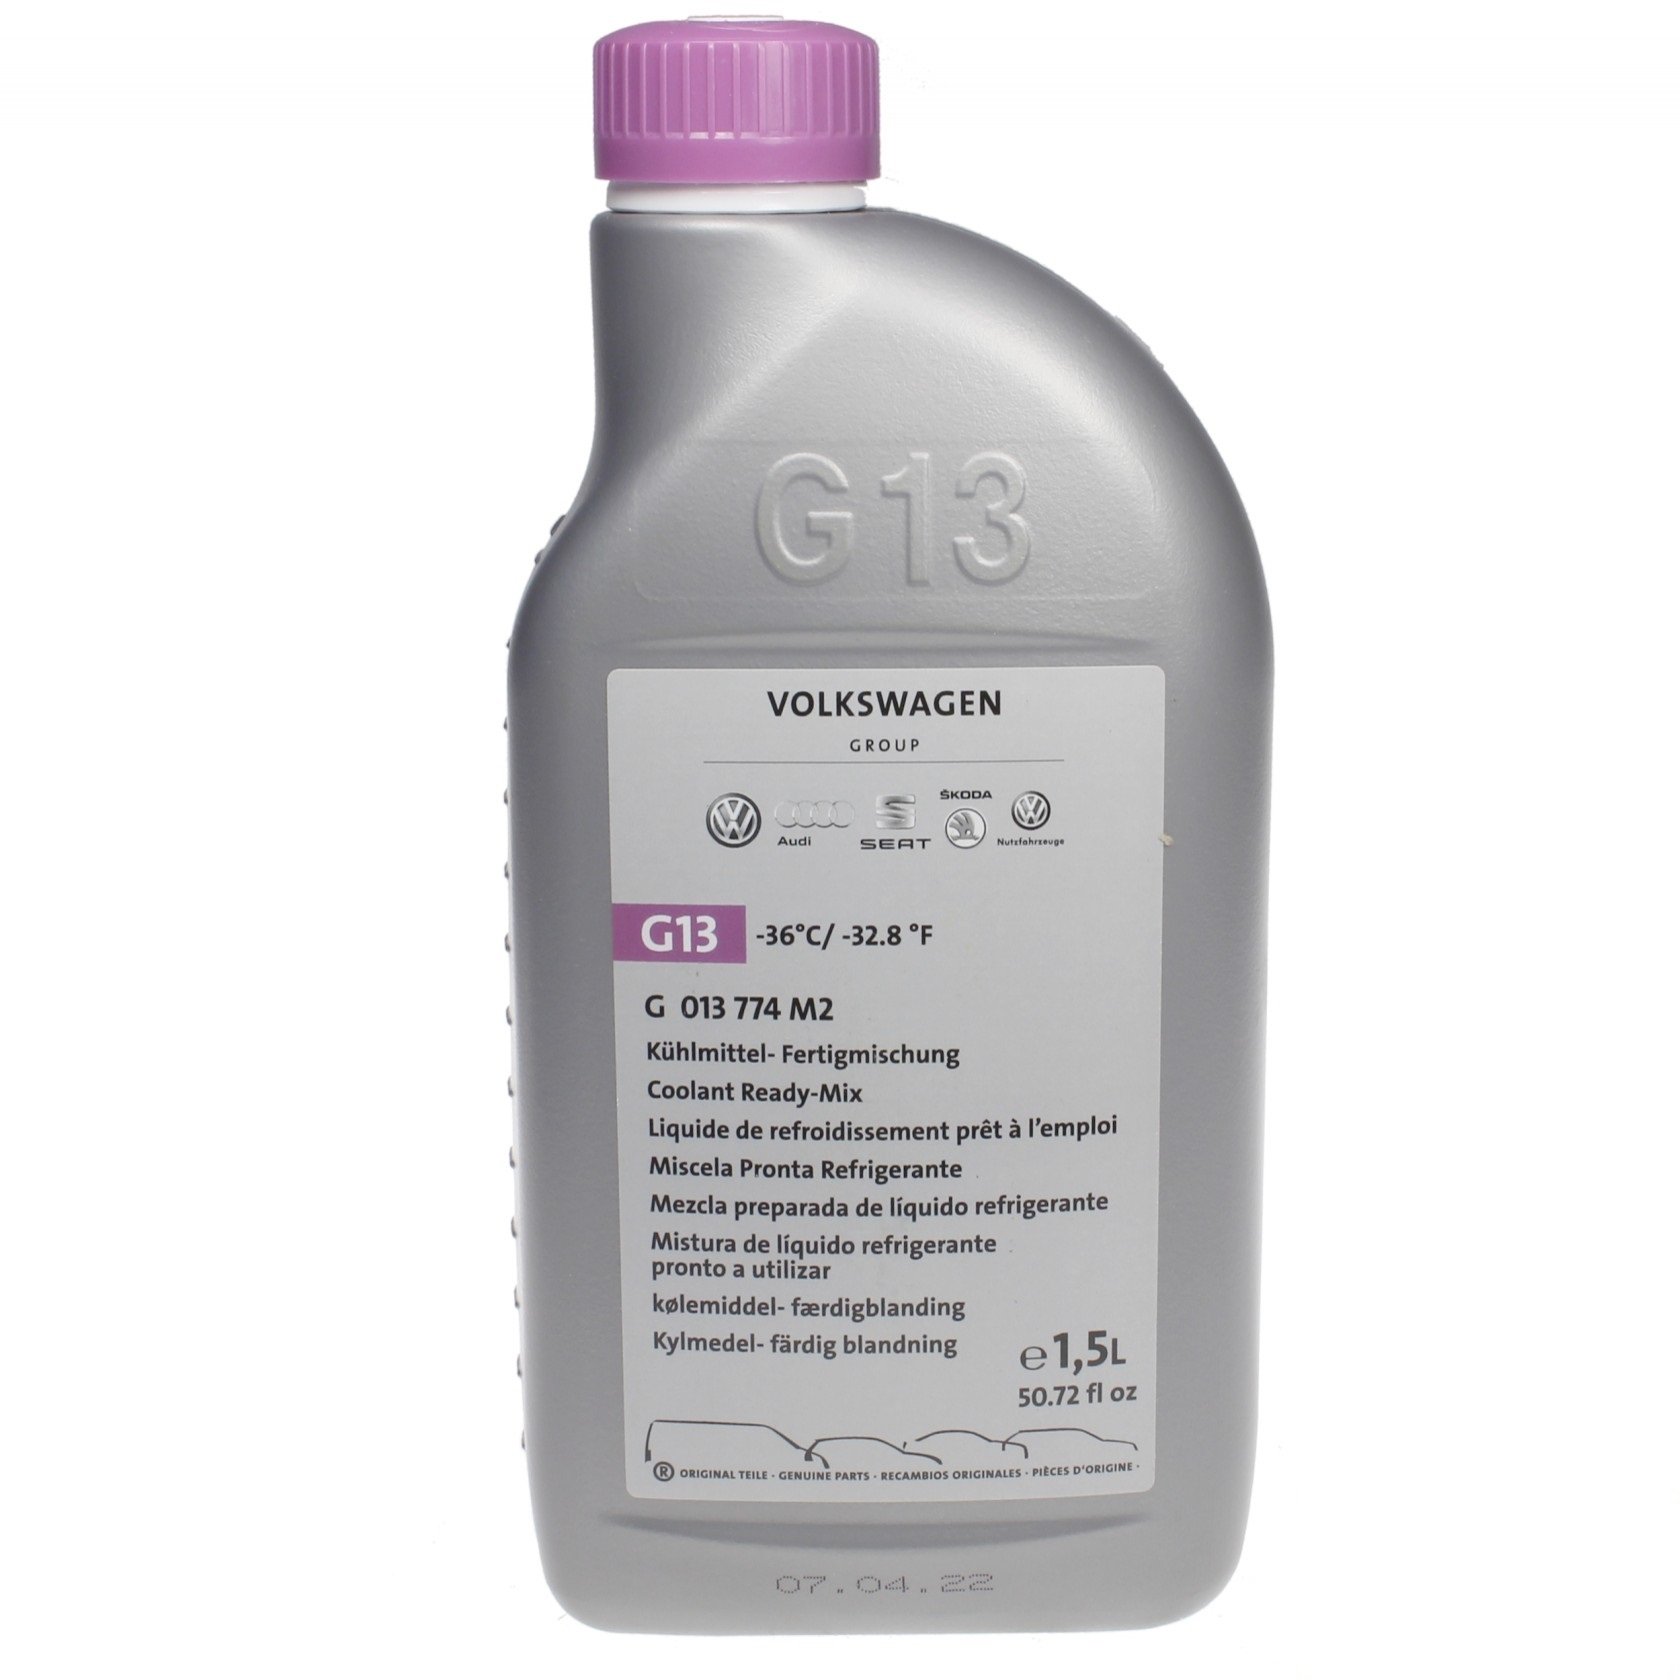 G013774M2 VAG - Frostschutzmittel Coolant Ready-Mix G13, -36°C